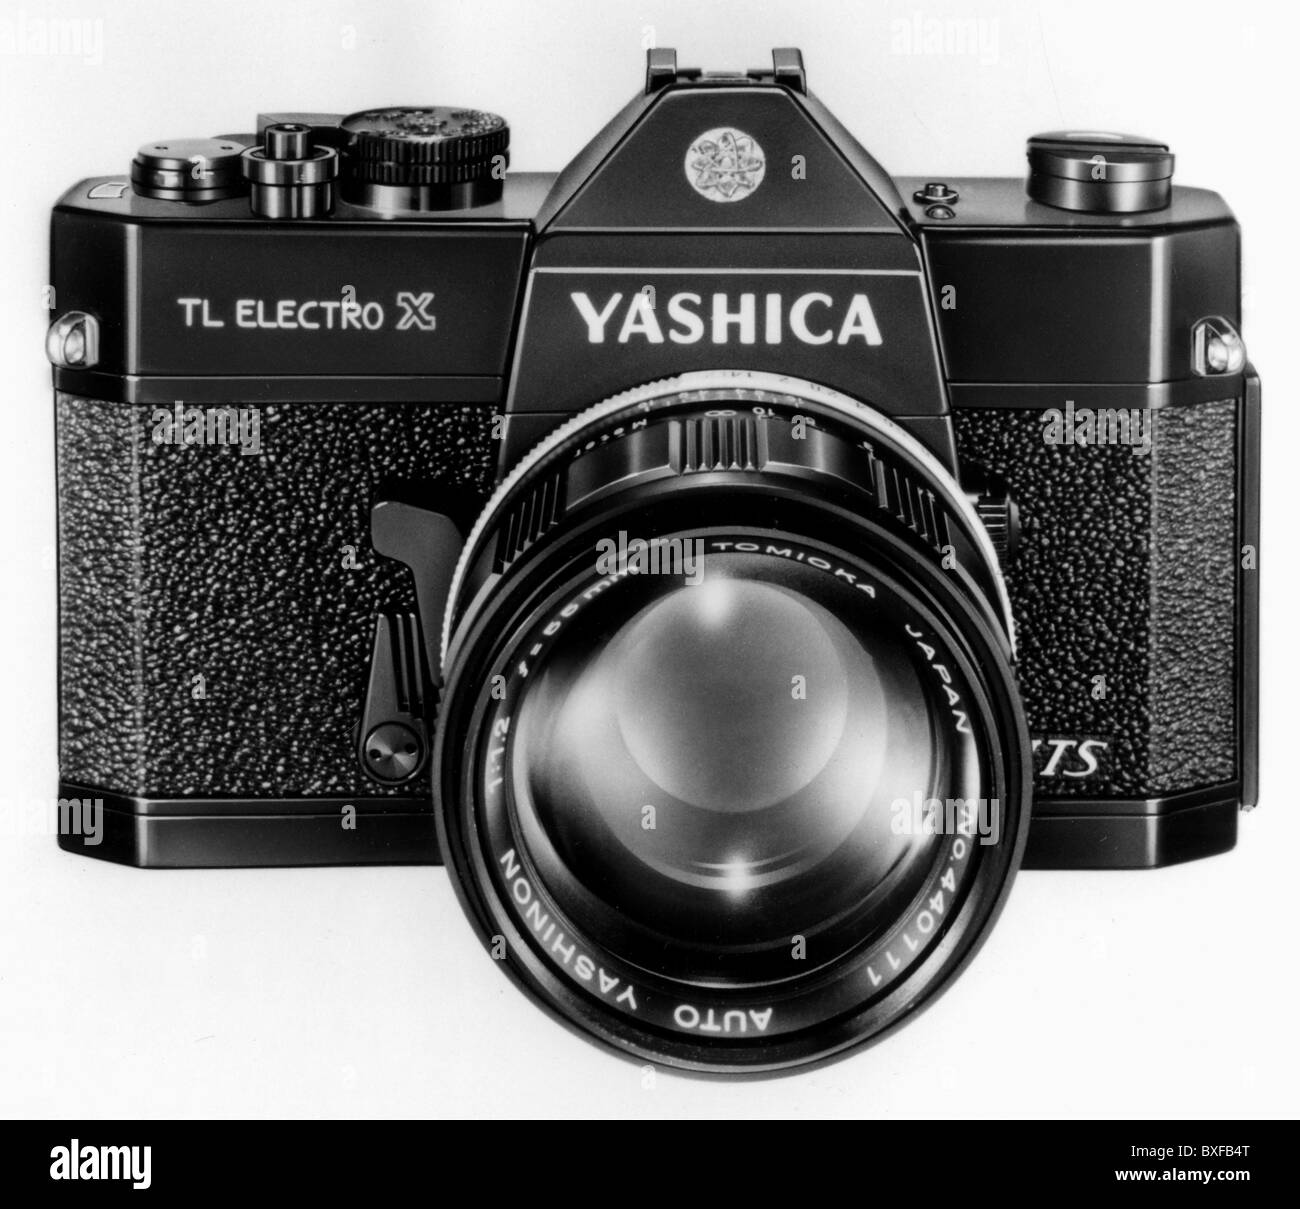 Photographie, appareils photo, Yashica TL Electro X, Japon, 1968 - 1974, droits supplémentaires-Clearences-non disponible Banque D'Images